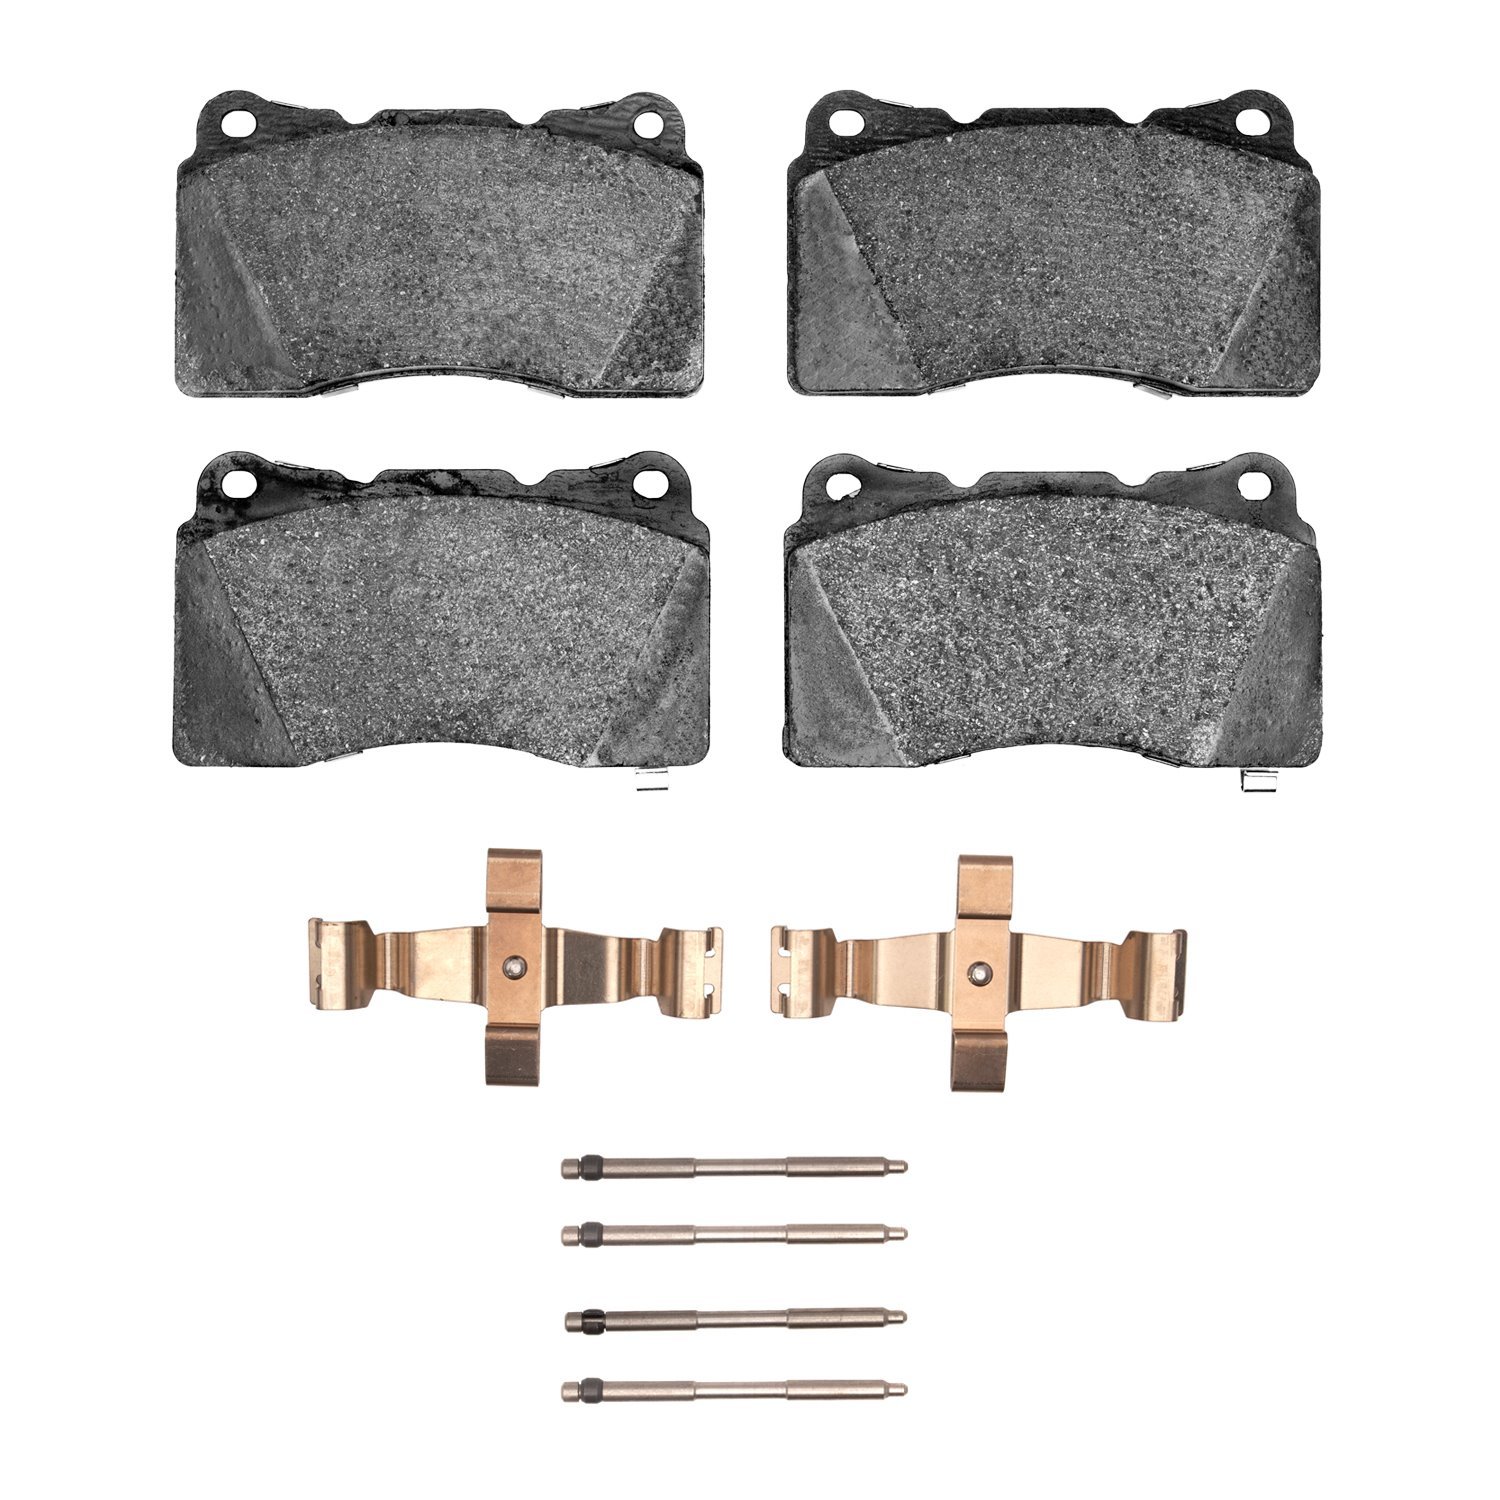 1310-1001-03 3000-Series Ceramic Brake Pads & Hardware Kit, 2013-2020 GM, Position: Front